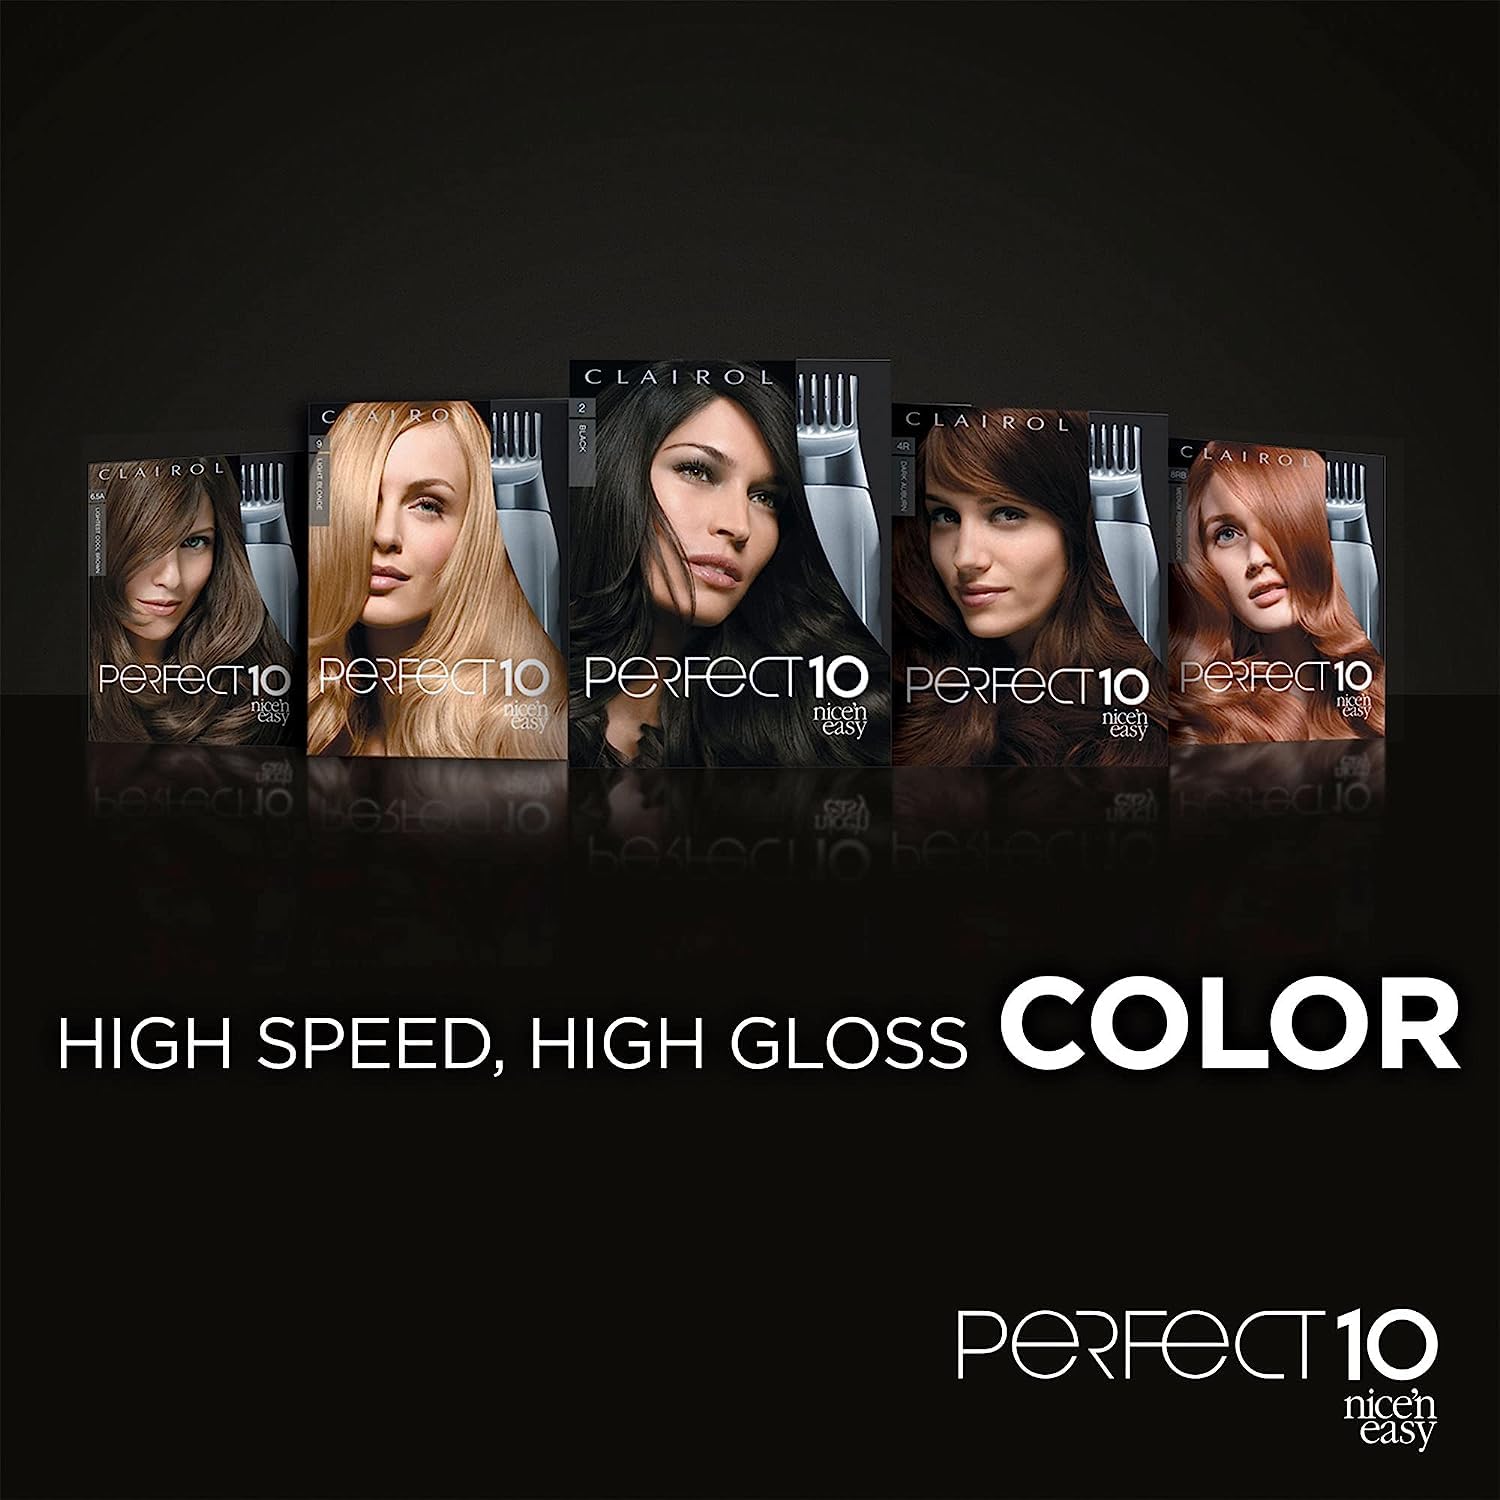 Clairol Nice'n Easy Perfect 10 Permanent Hair Dye, 4 Dark Brown Hair Color, Pack of 2